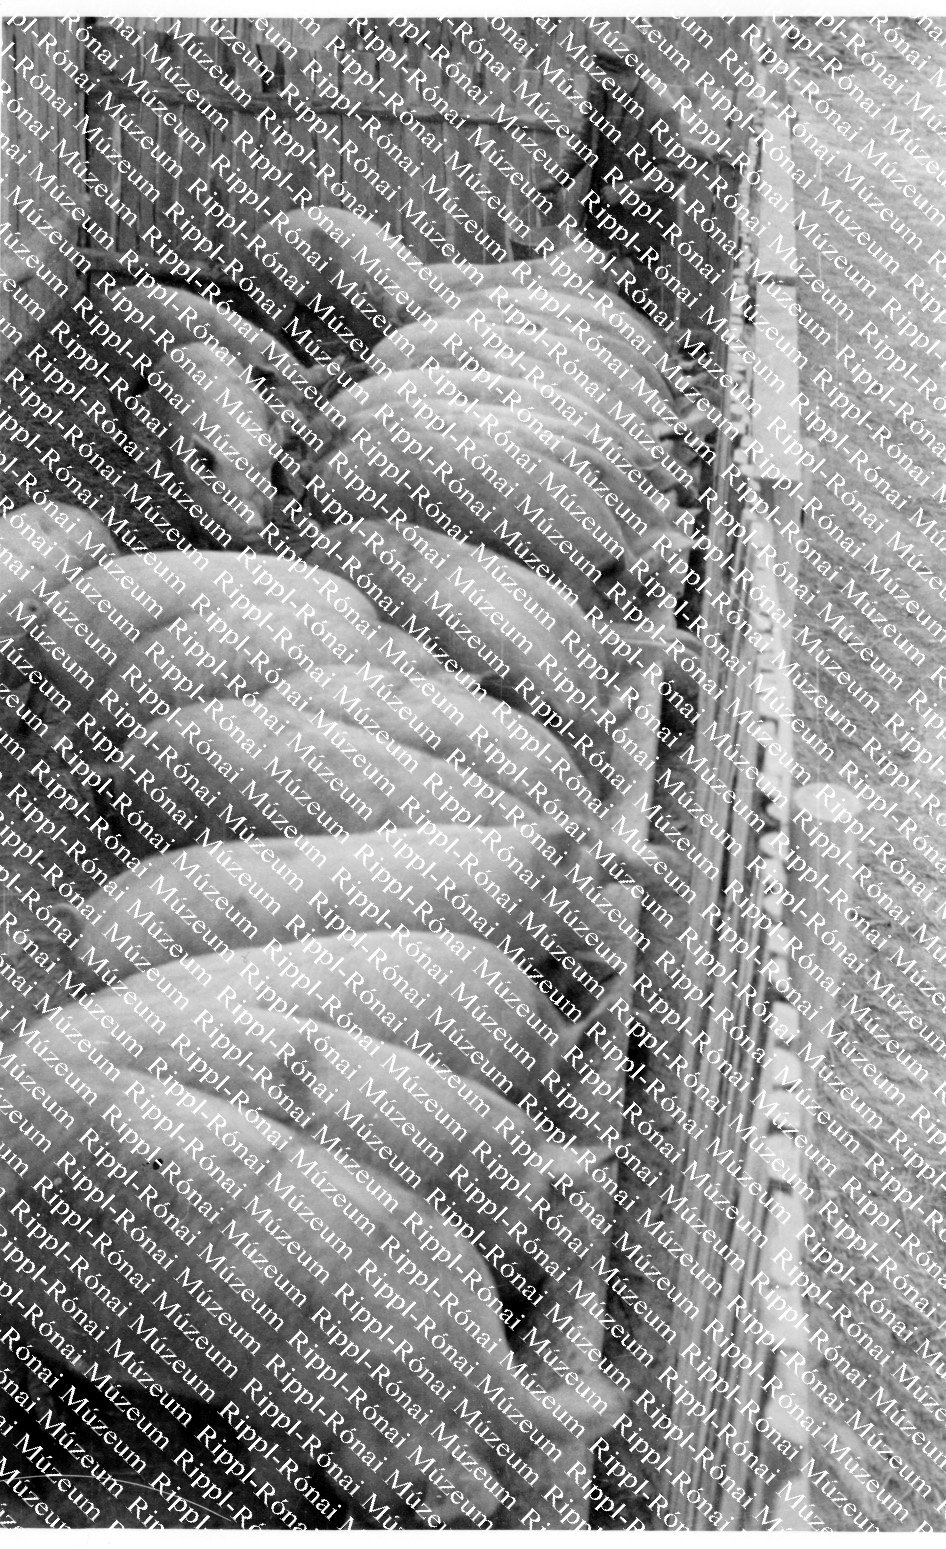 A zicsi Búzakalász Tsz. új sertéshizlaldája (Rippl-Rónai Múzeum CC BY-NC-SA)